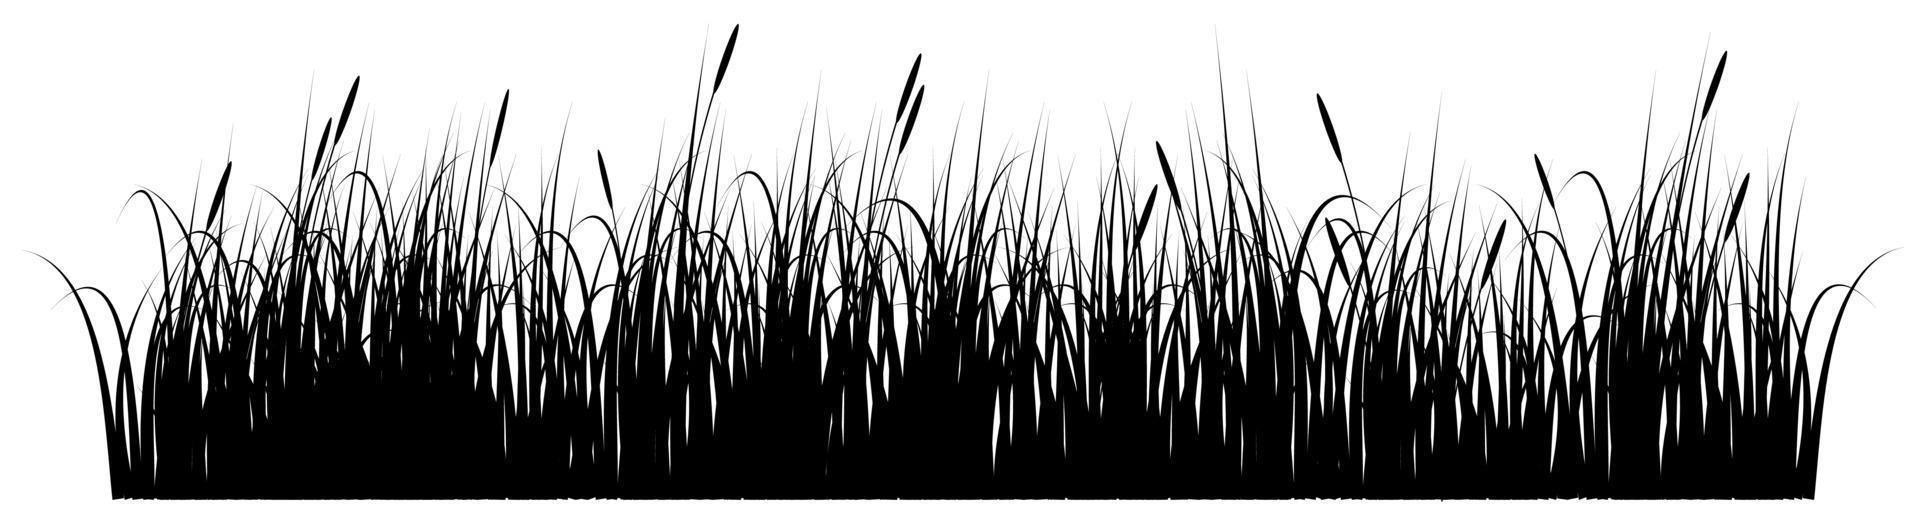 hierba vector blanco y negro